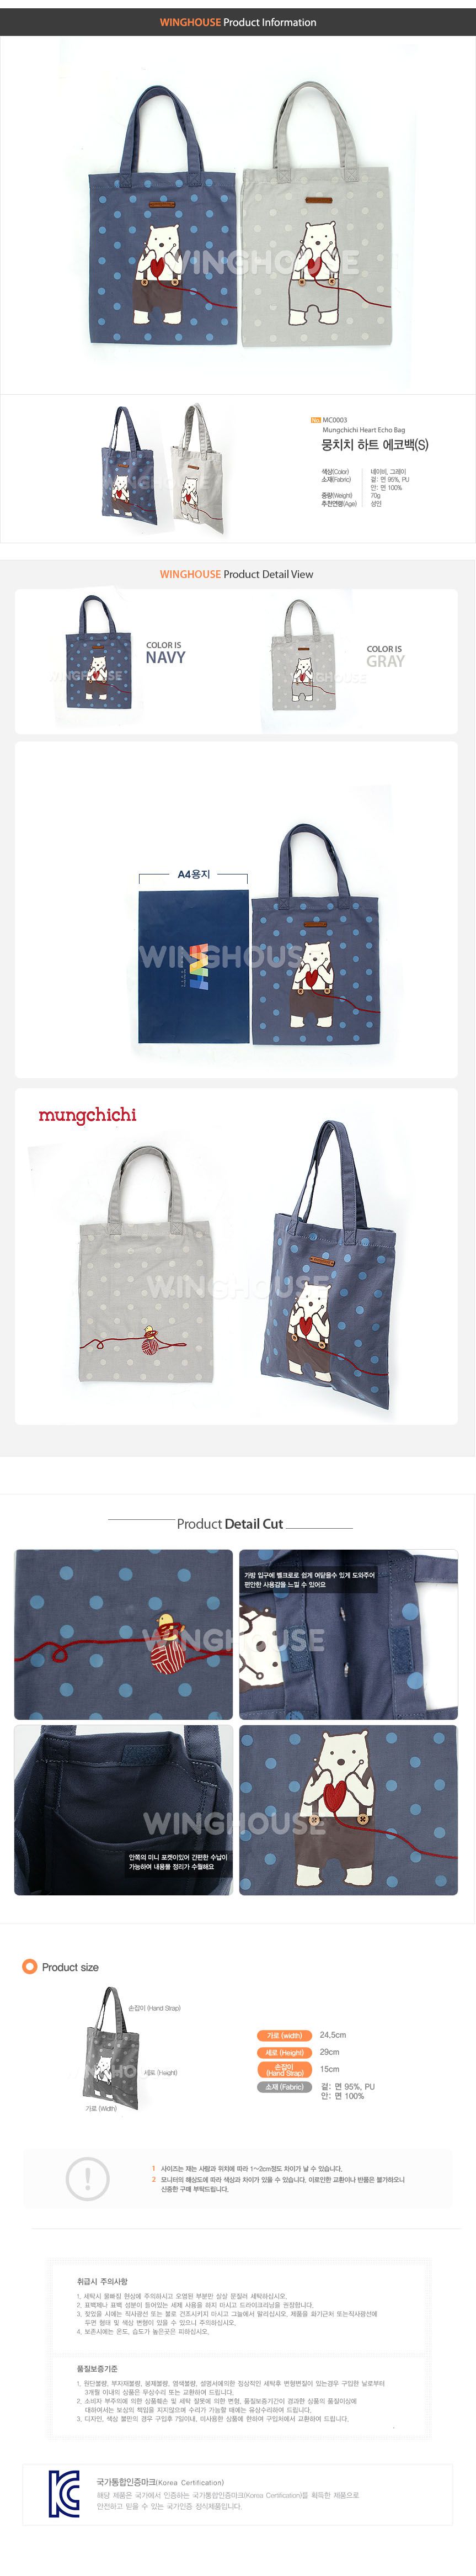 ★特價★韓國品牌Mungchichi-設計款提袋【MC0003】-S